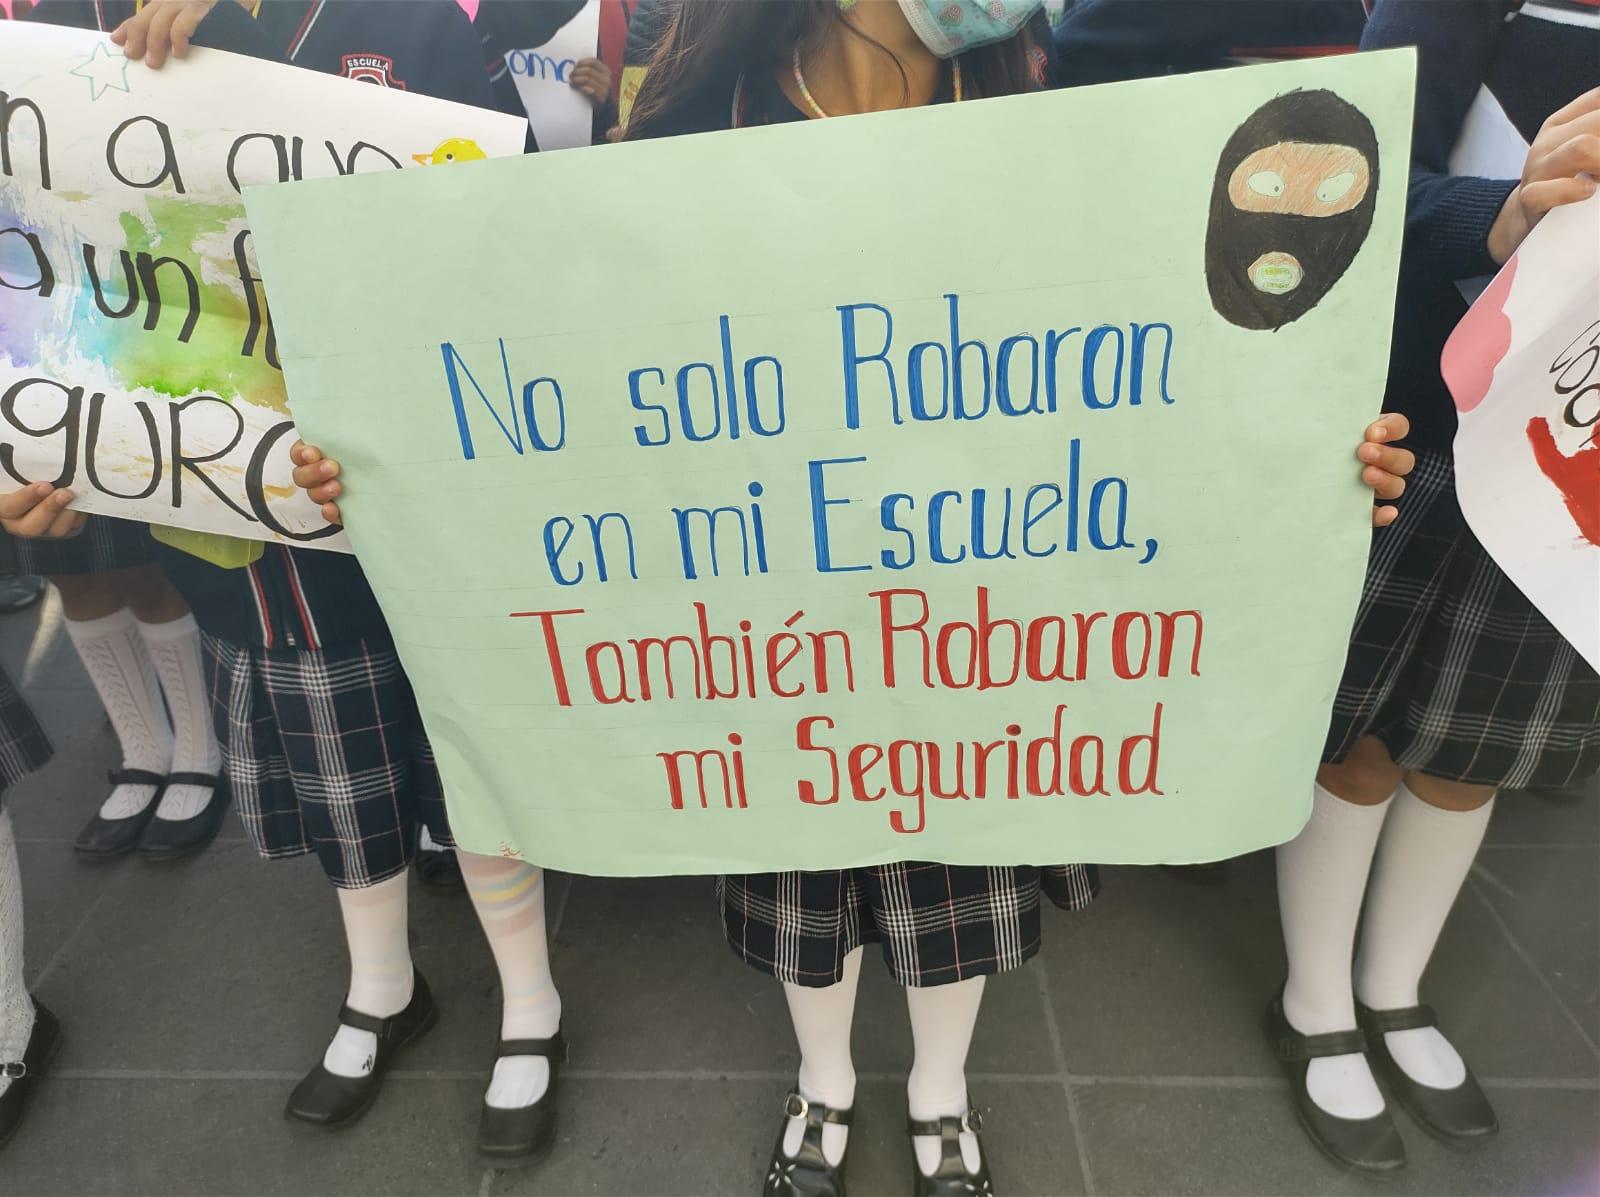 Robaron mi seguridad: Protestan por robos en escuela de Coatepec